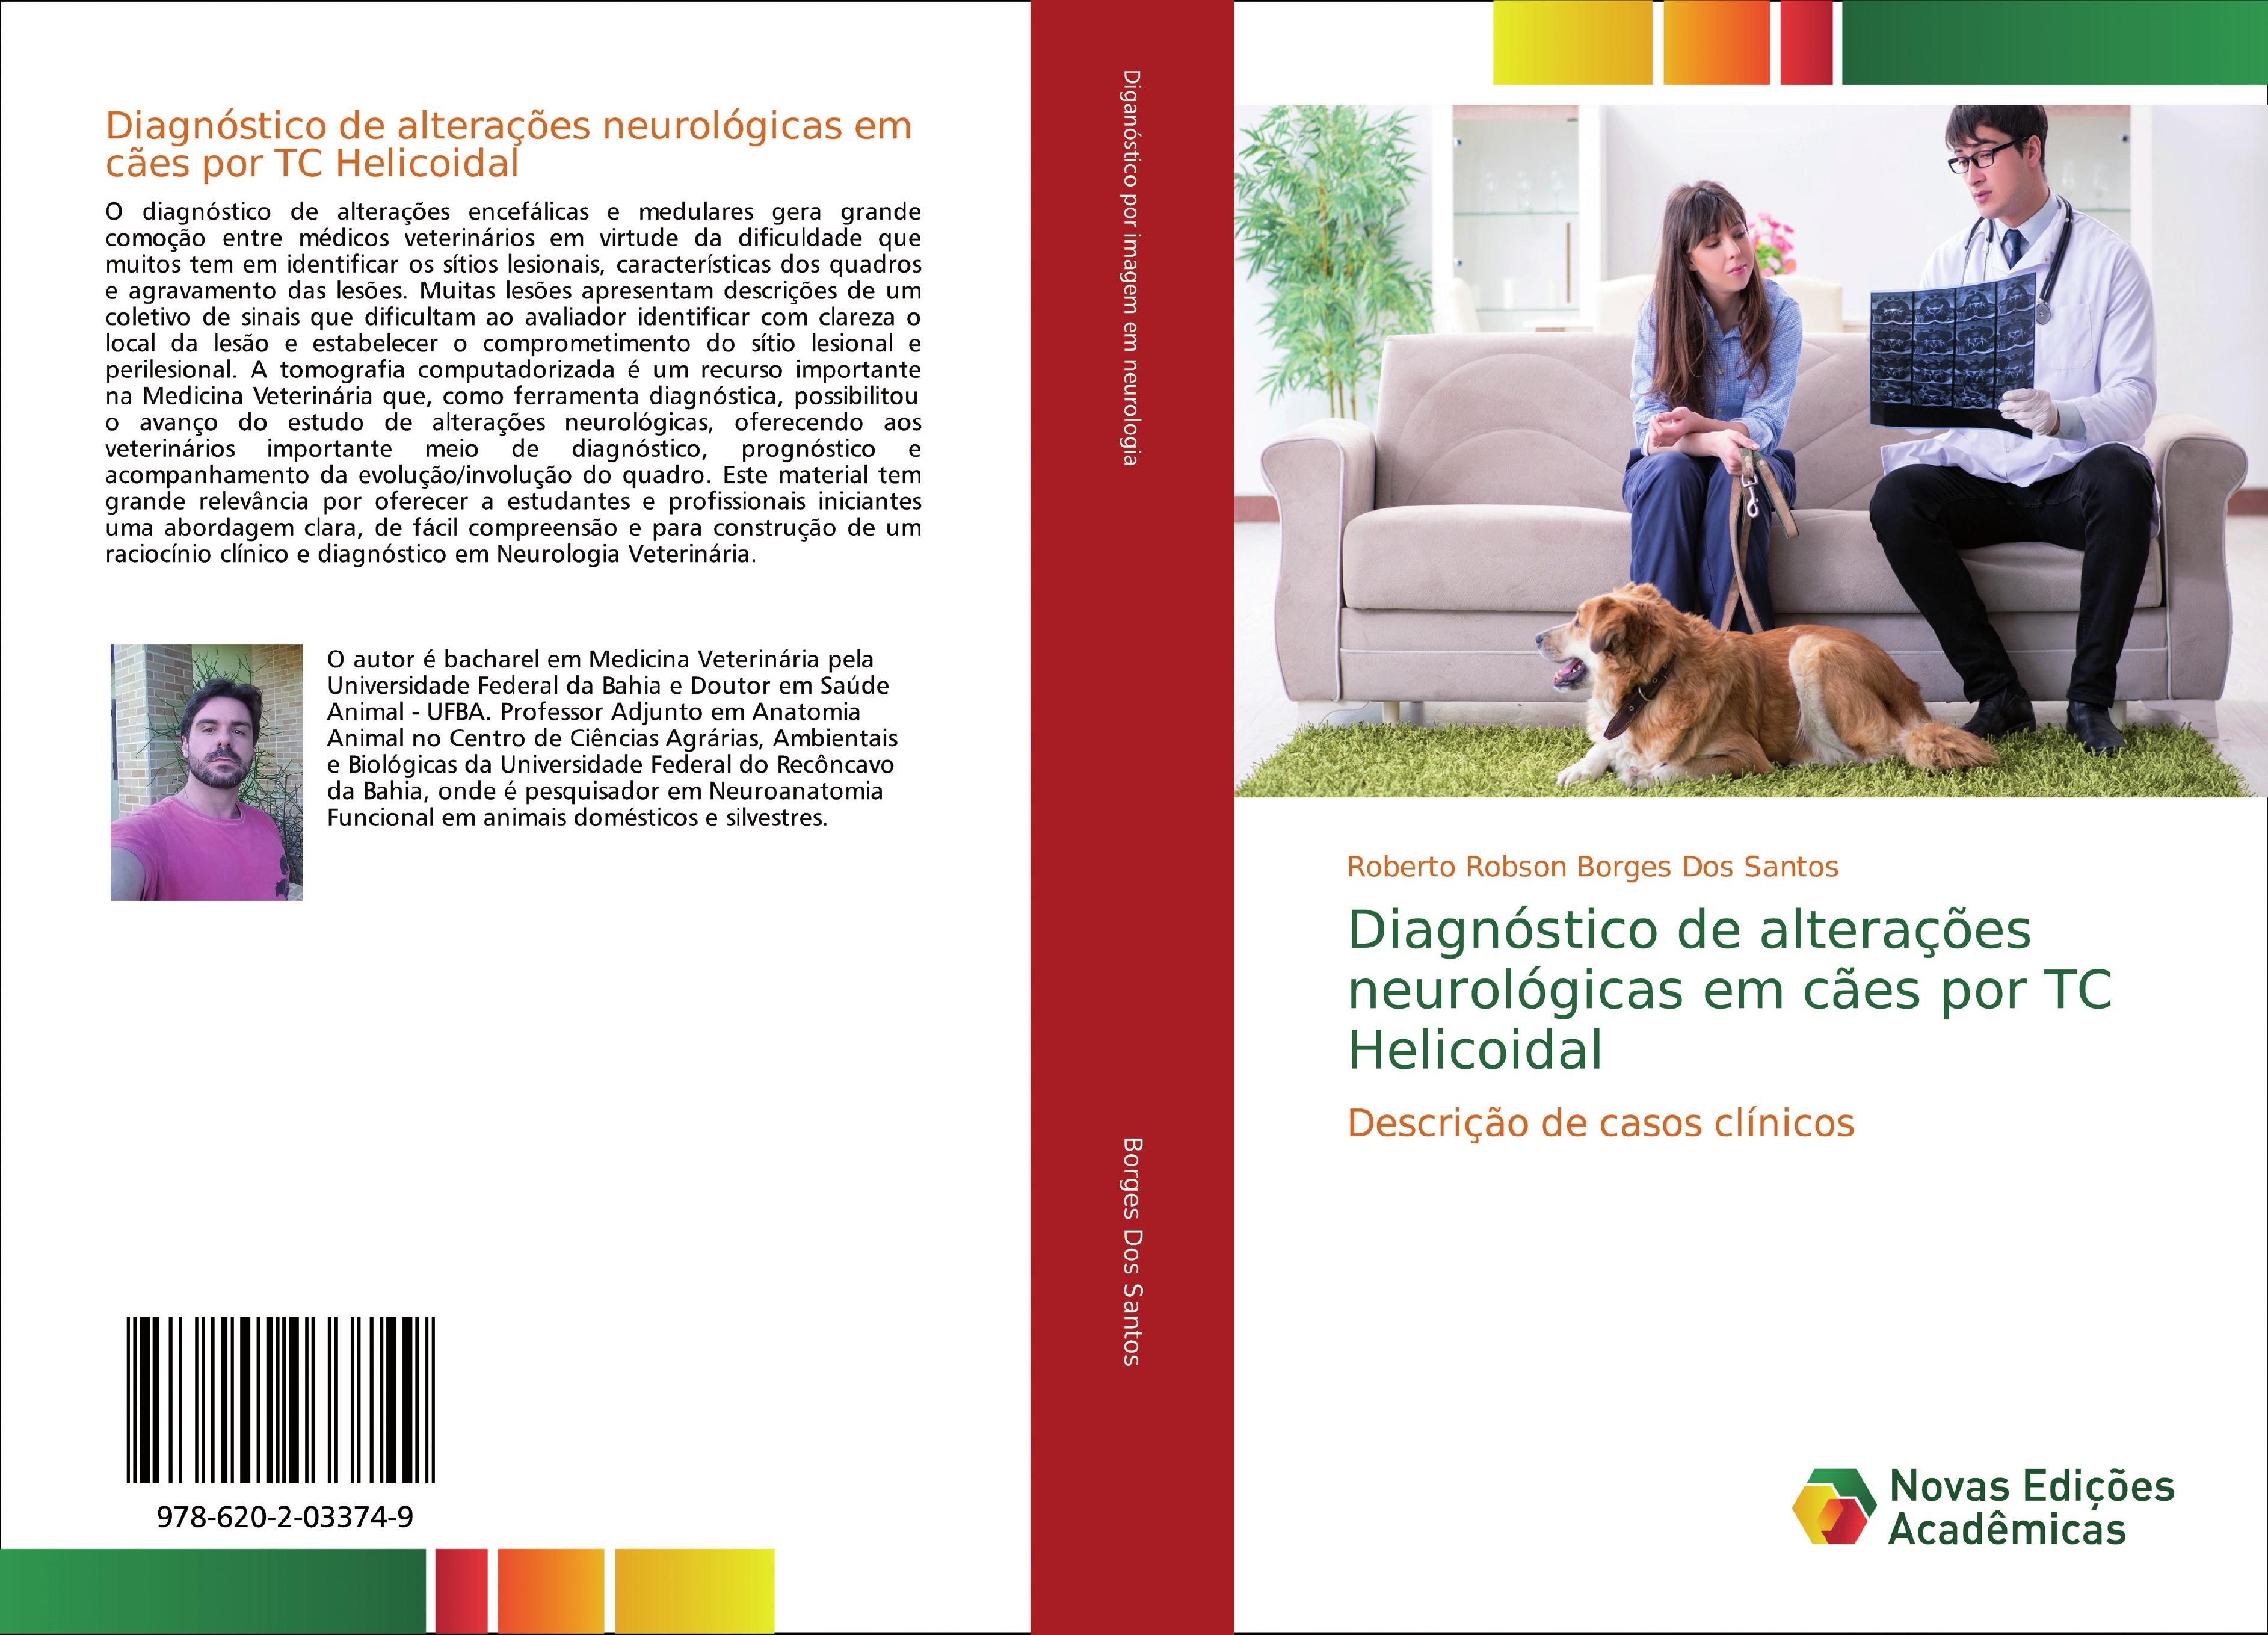 Diagnóstico de alterações neurológicas em cães por TC Helicoidal - Roberto Robson Borges Dos Santos